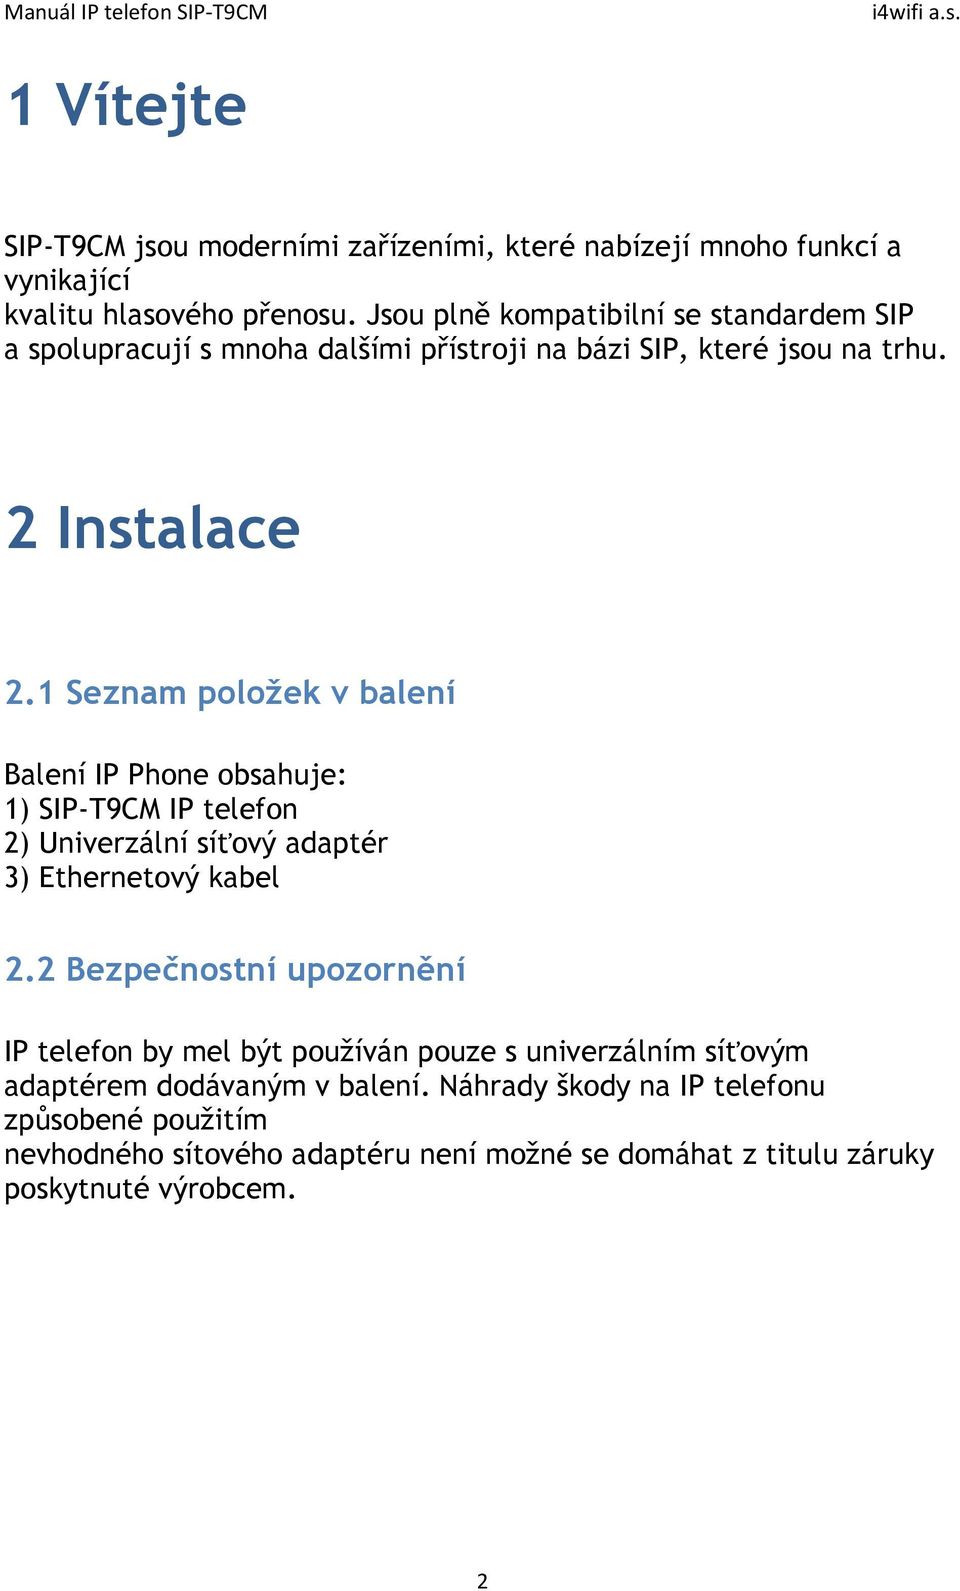 1 Seznam položek v balení Balení IP Phone obsahuje: 1) SIP-T9CM IP telefon 2) Univerzální síťový adaptér 3) Ethernetový kabel 2.